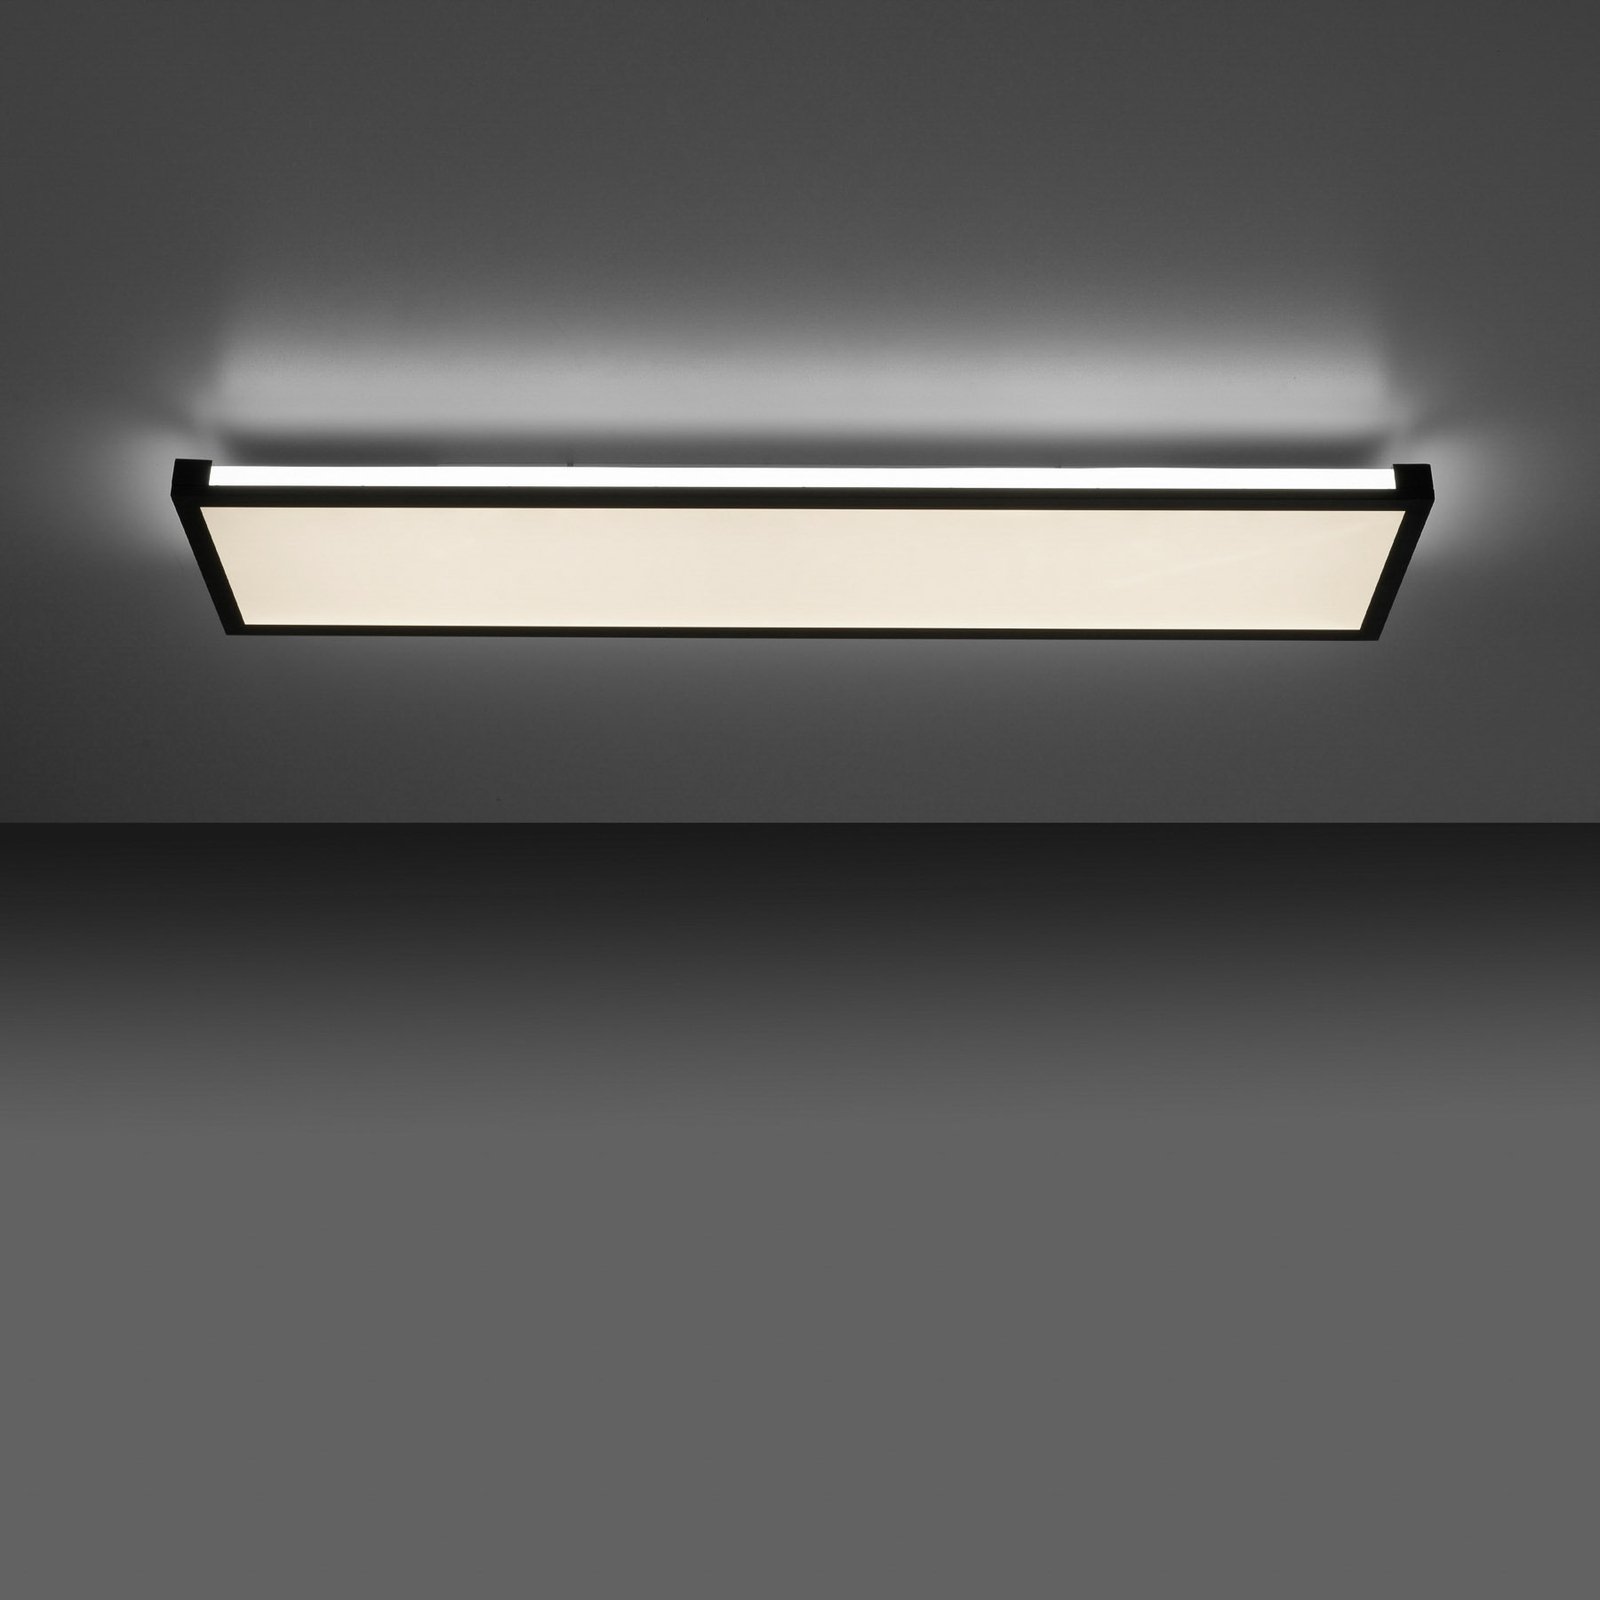 LED plafondlamp Mario 100x25cm, dimbaar, RGBW